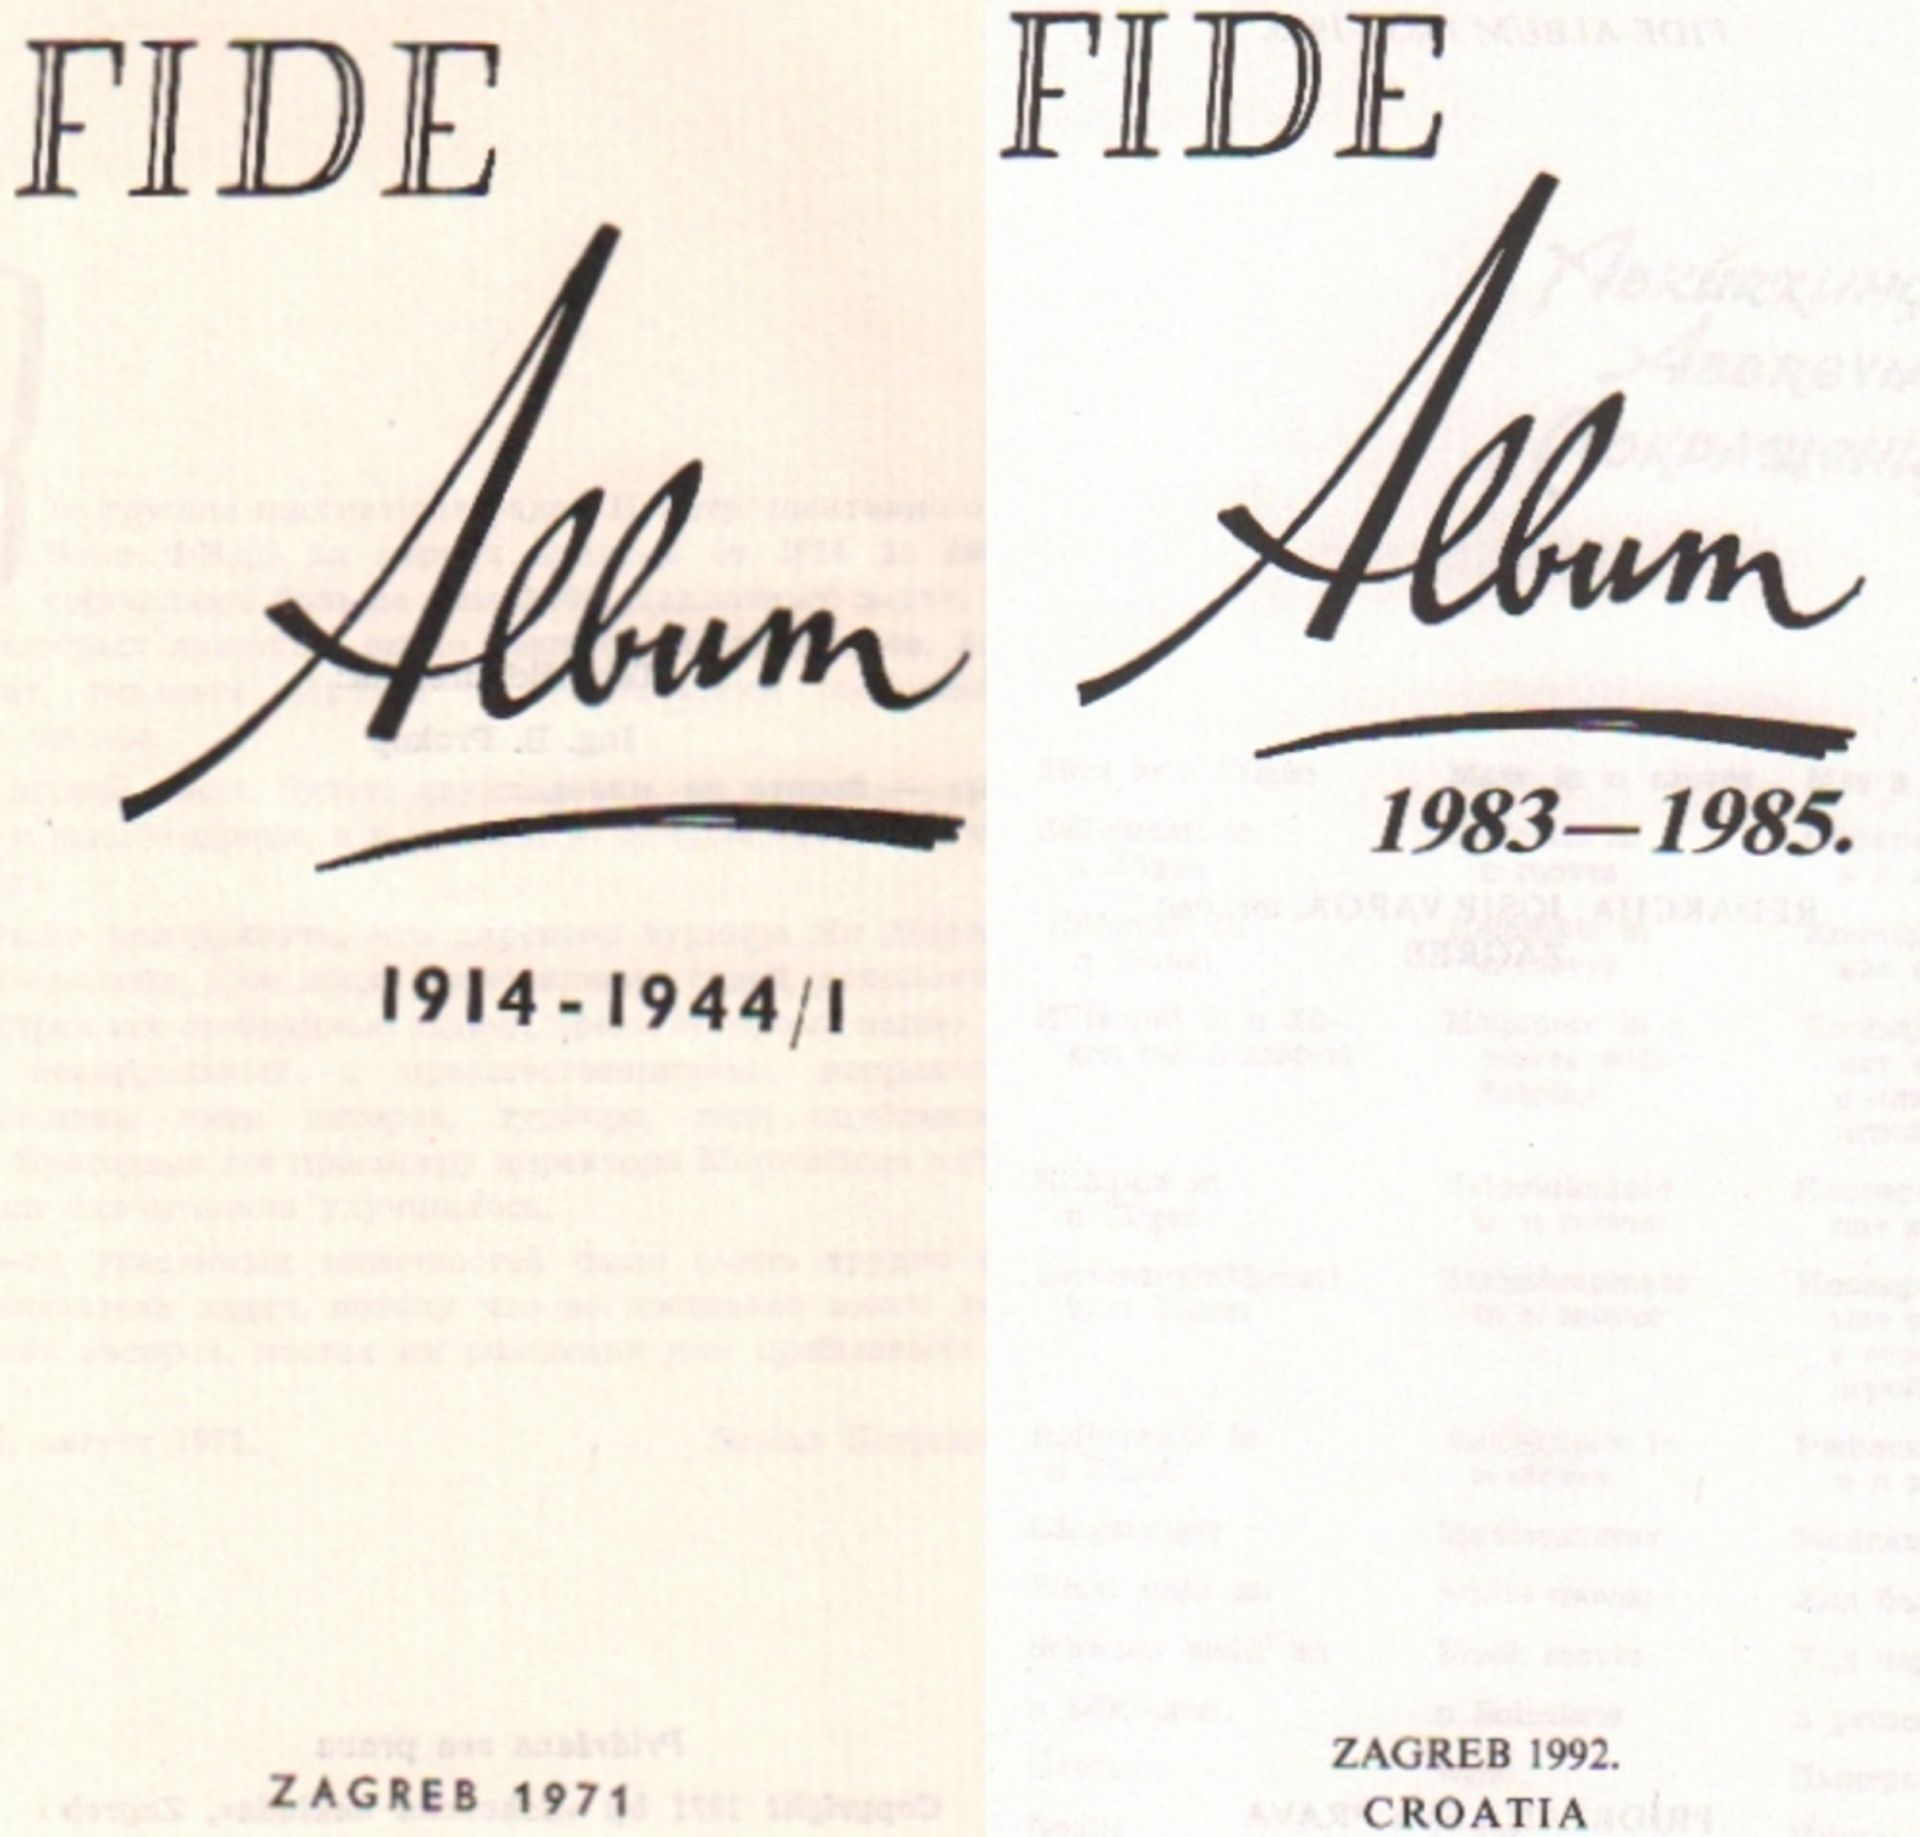 FIDE Album. Konvolut von 14 Bänden der FIDE Alben über den Zeitraum 1914 - 1985. Editor: Nenad